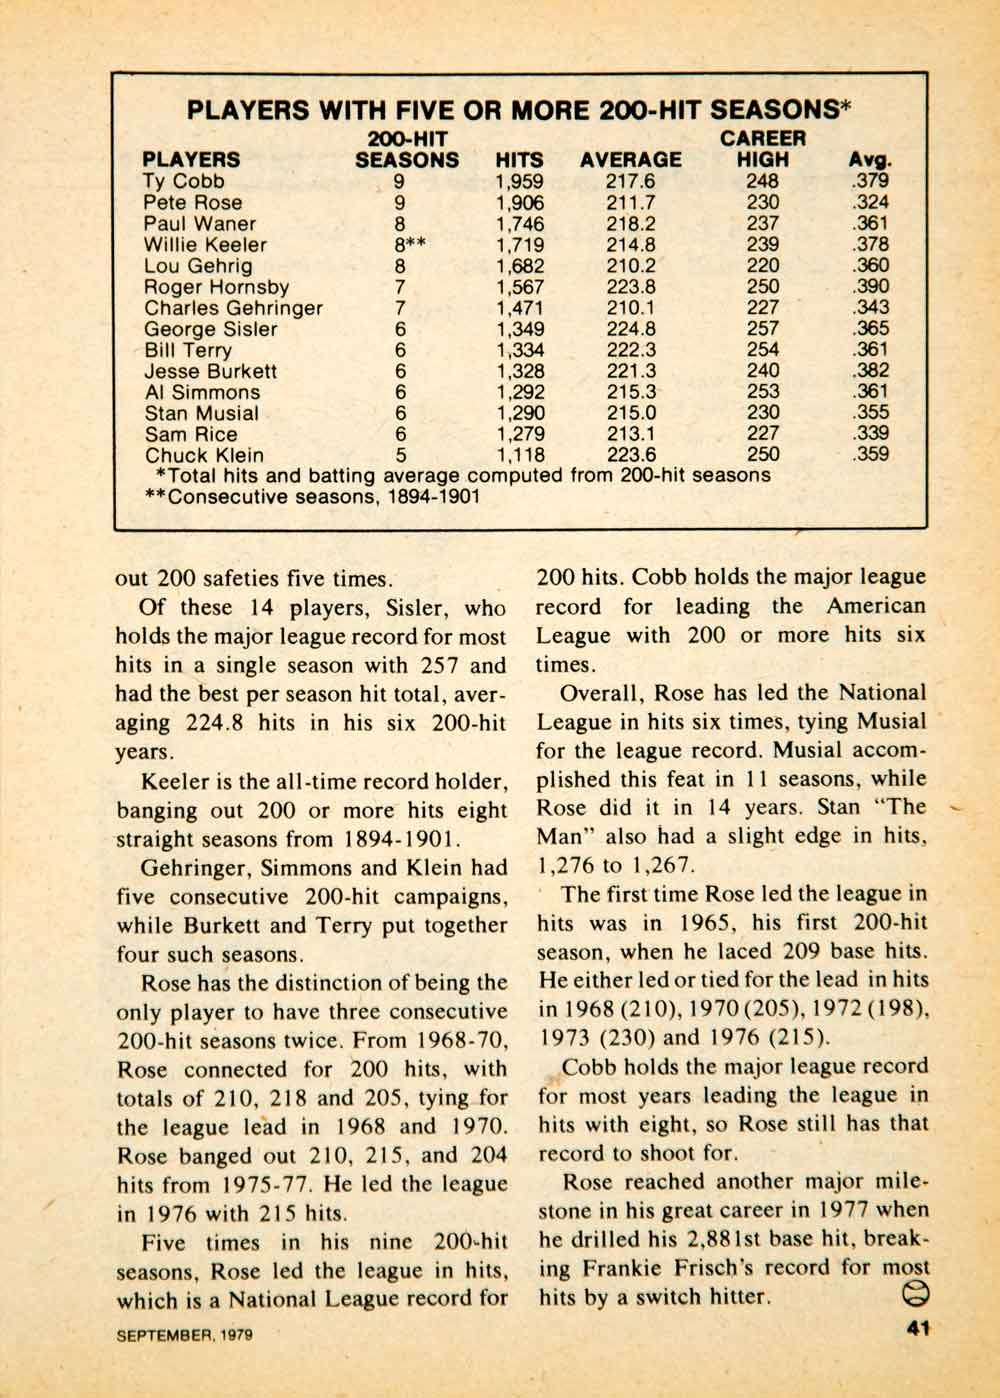 1979 Article MLB Baseball Sports Memorabilia Pete Rose Cincinnati Reds YBD1